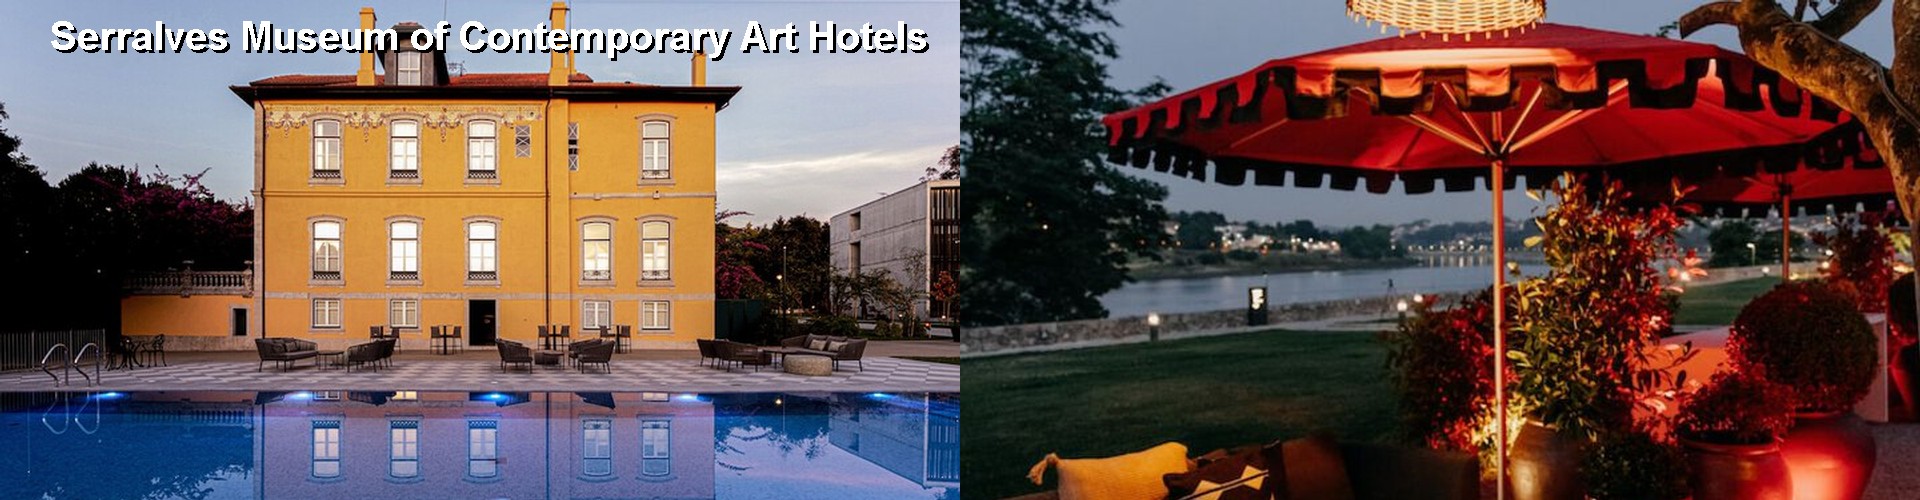 5 Best Hotels near Serralves Museum of Contemporary Art